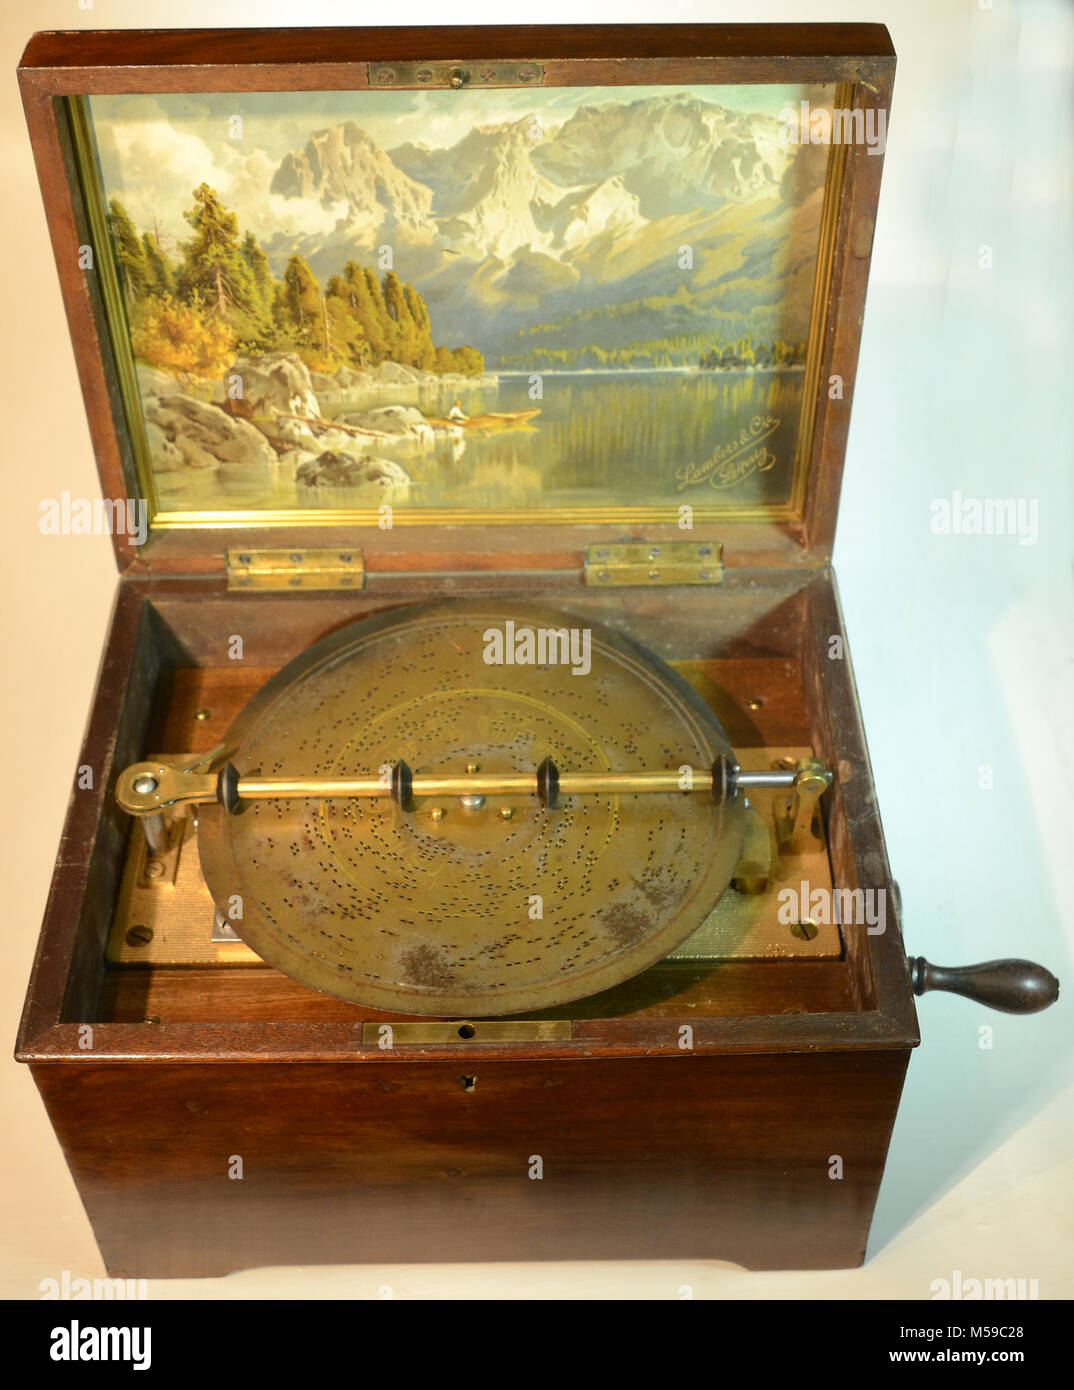 Music box antique Banque de photographies et d'images à haute résolution -  Alamy